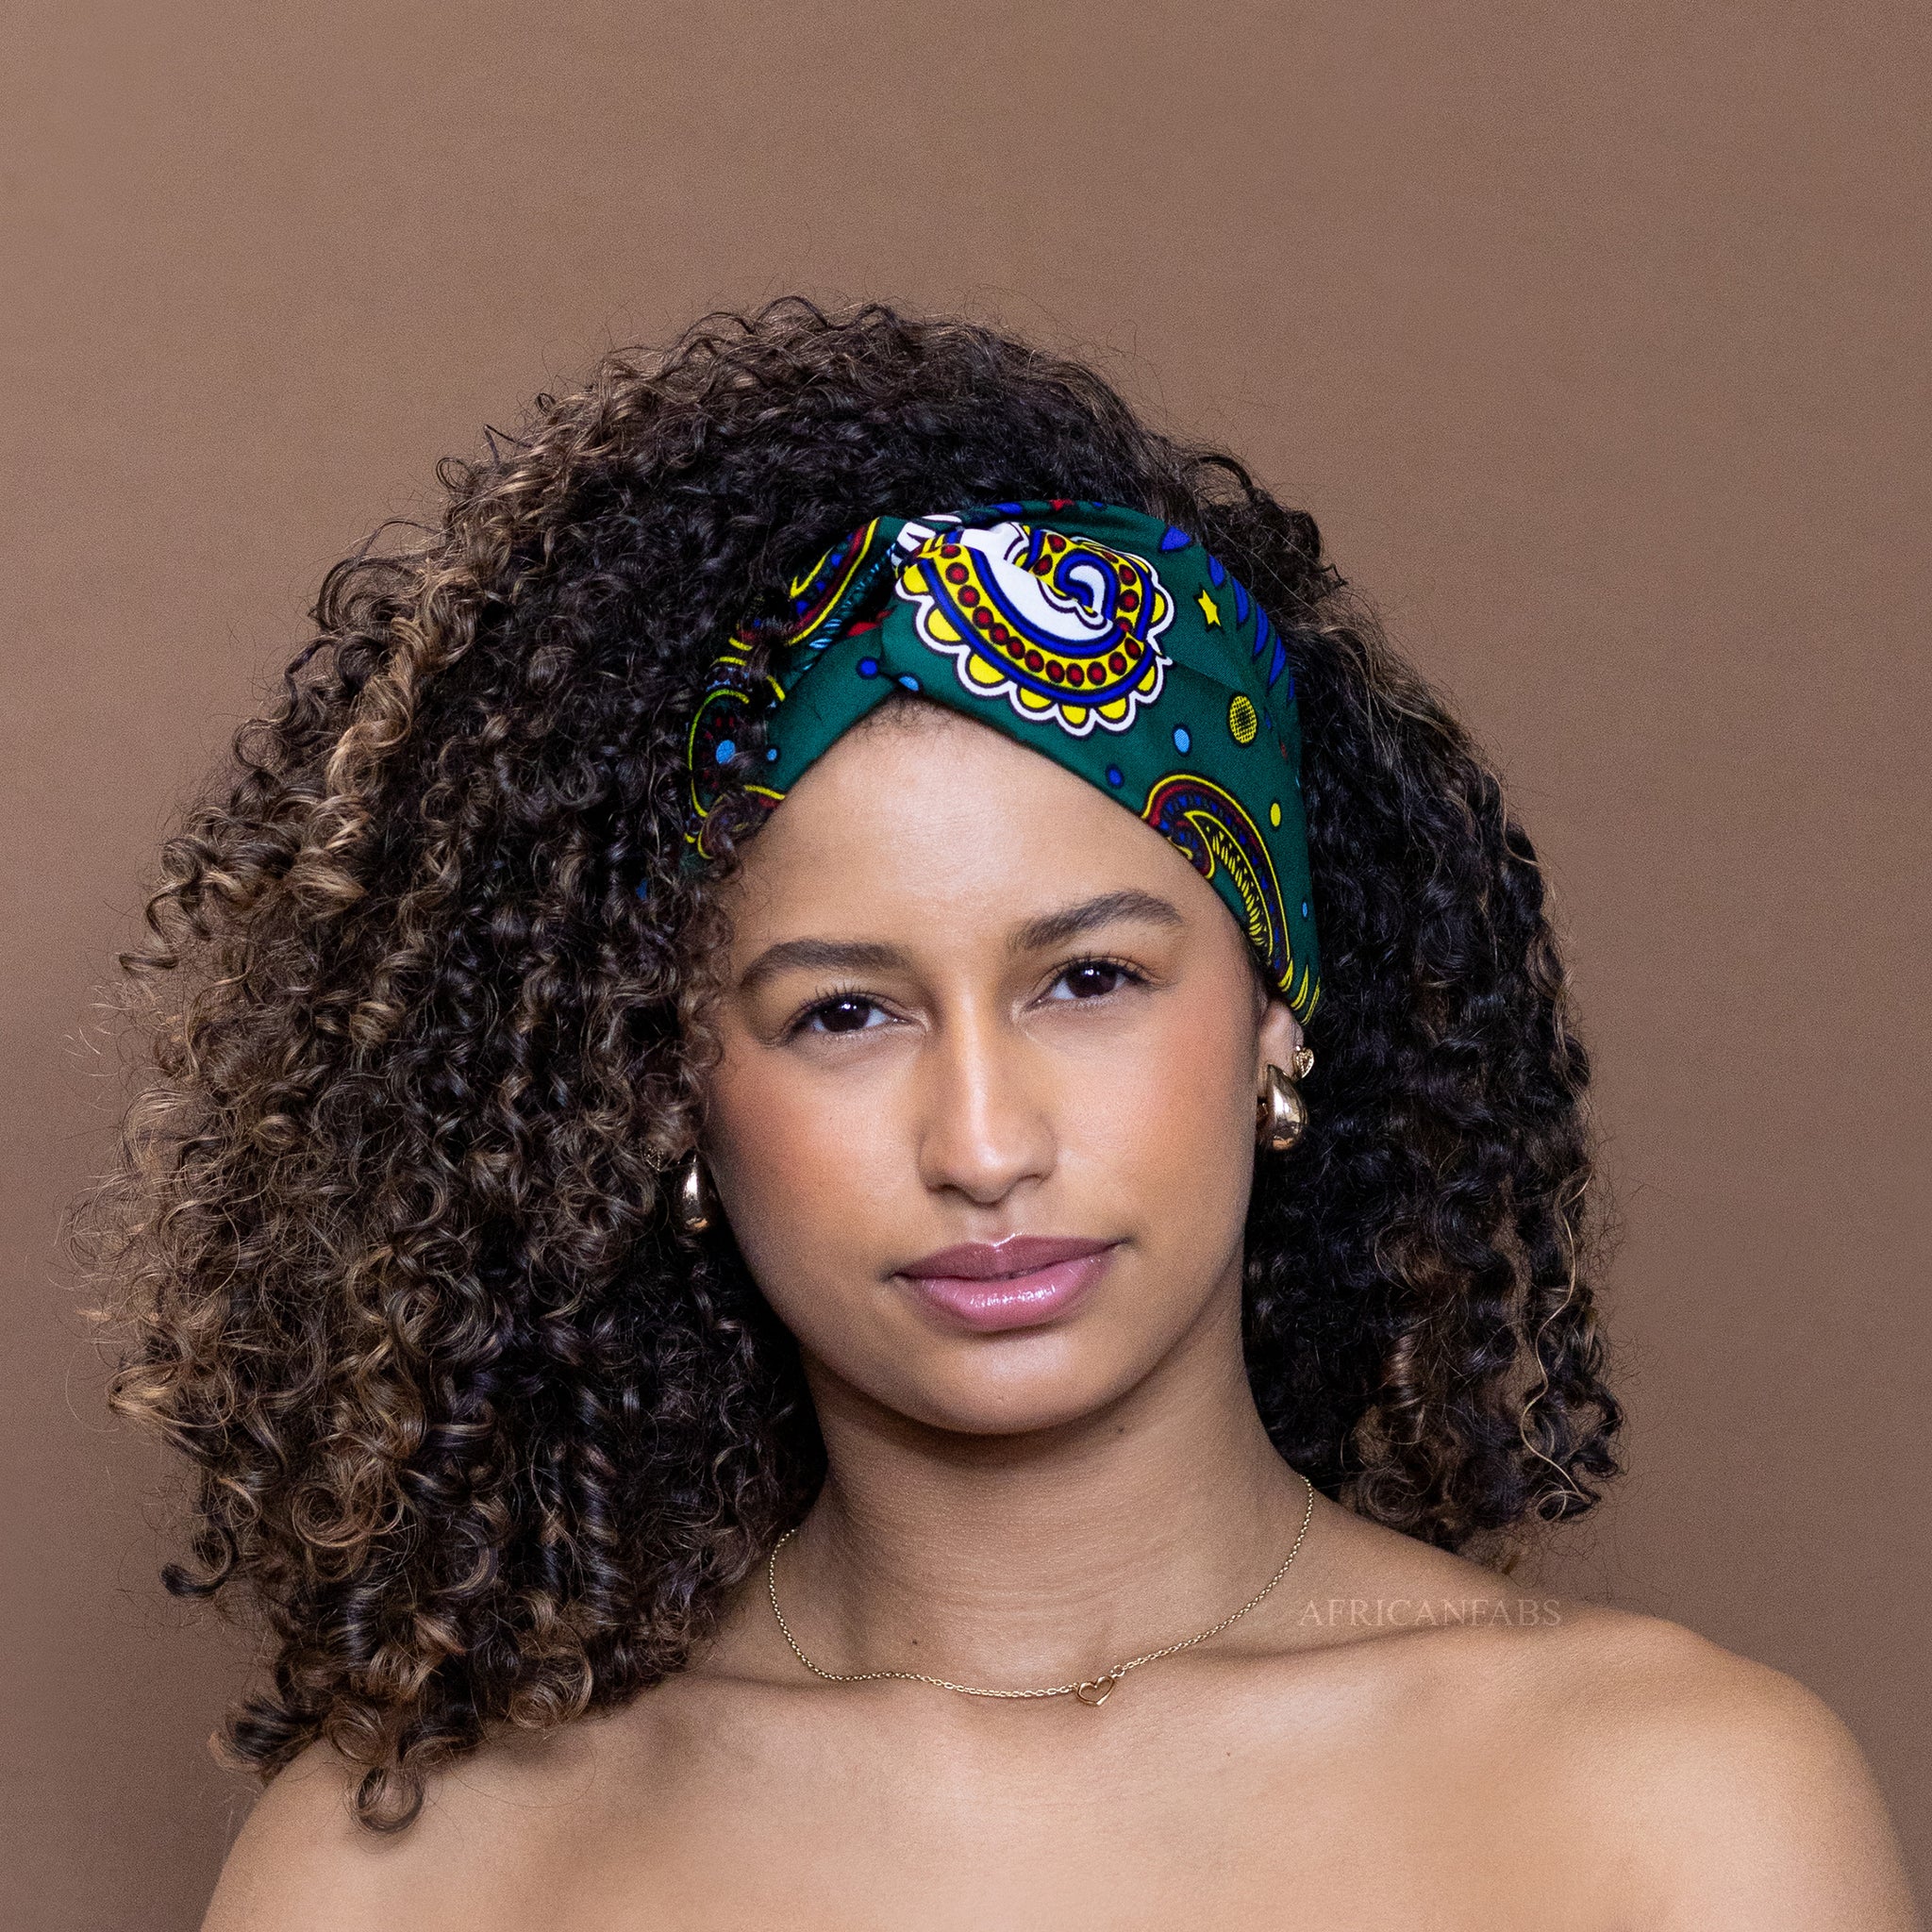 Bandeau imprimé africain - Adultes - Accessoires pour cheveux - Vert Multicolore Paisley